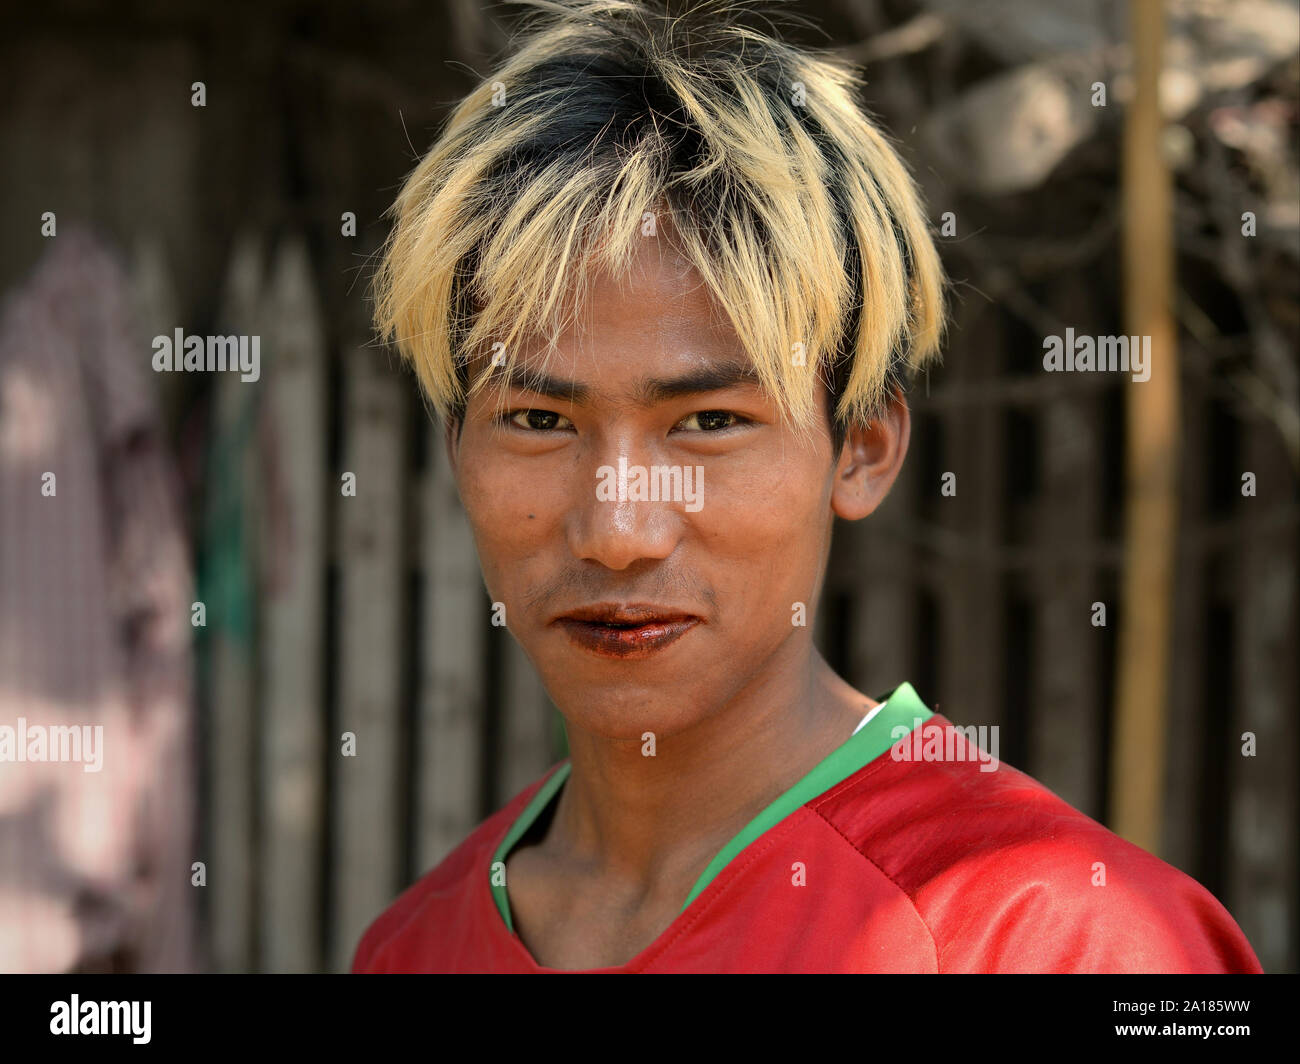 Jeune homme blond-birmane avec les cheveux teints en rouge, et les lèvres tachées de bétel bétel une mâche (feuille de bétel, d'arec, la chaux, les épices et le tabac). Banque D'Images